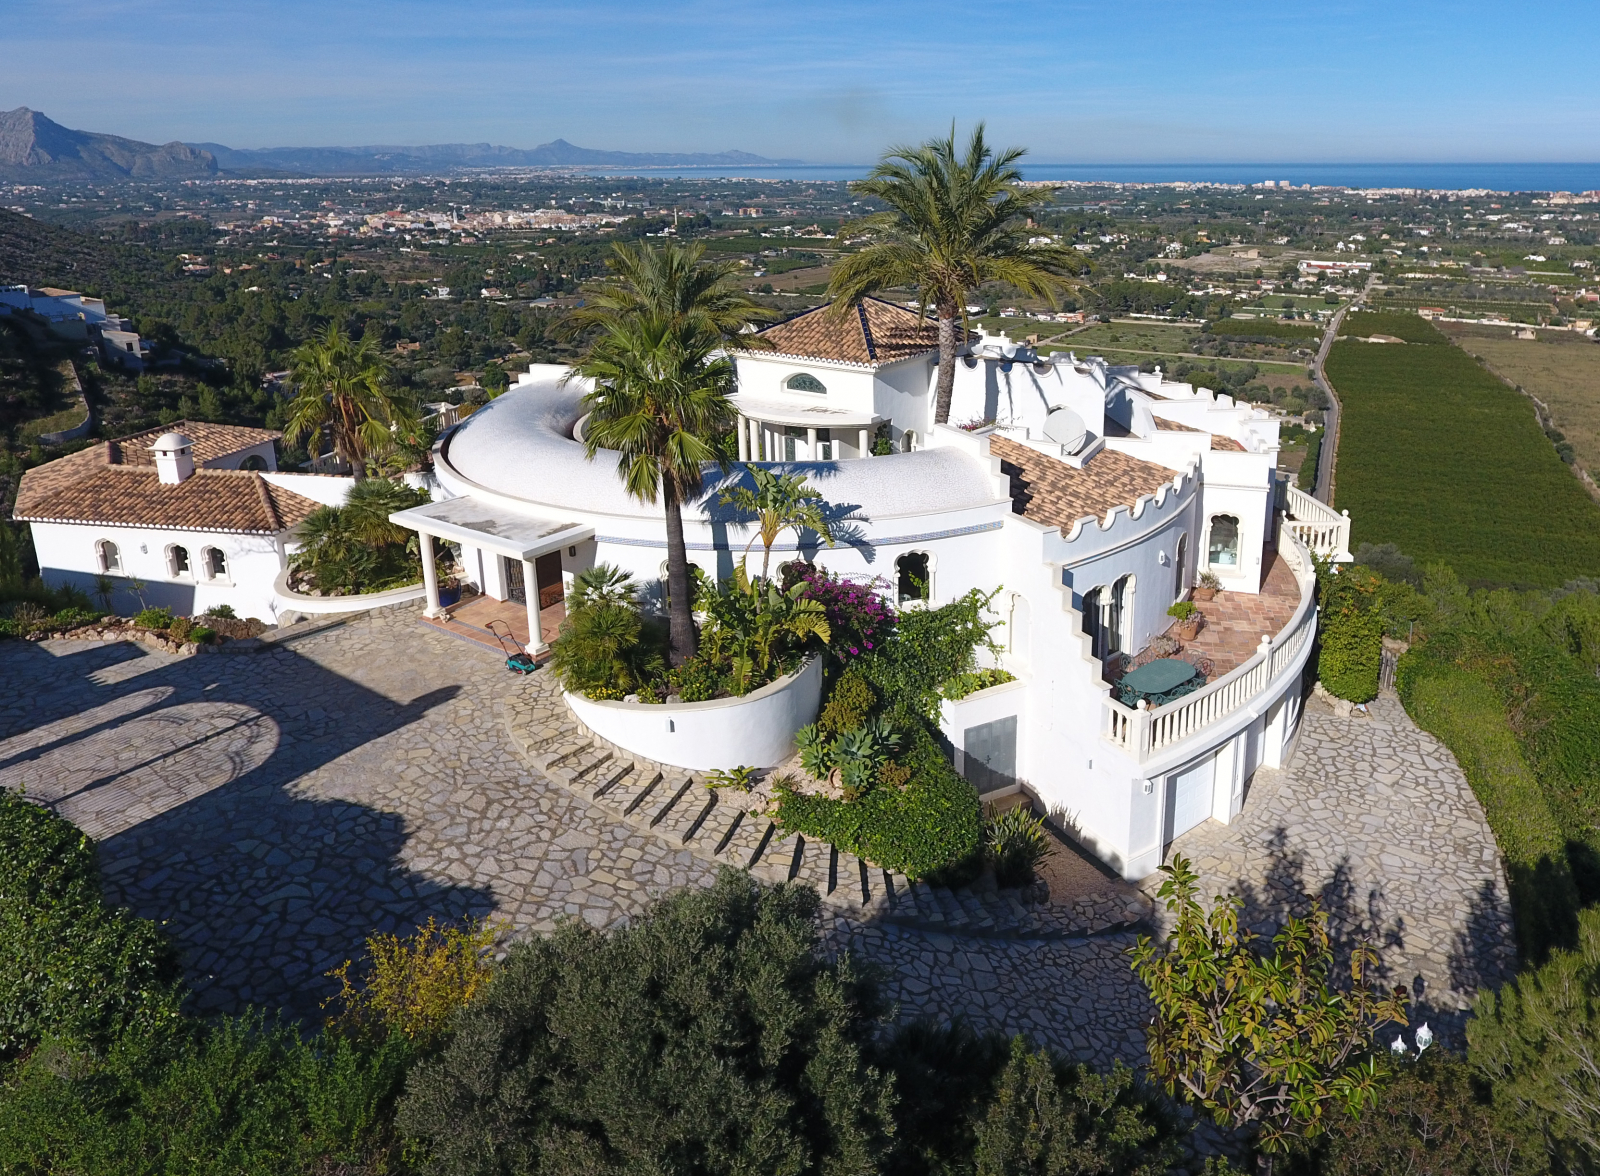 Excepcional villa de lujo en una parcela única de unos 3000 m² con fantásticas vistas al mar junto al Montgó. 